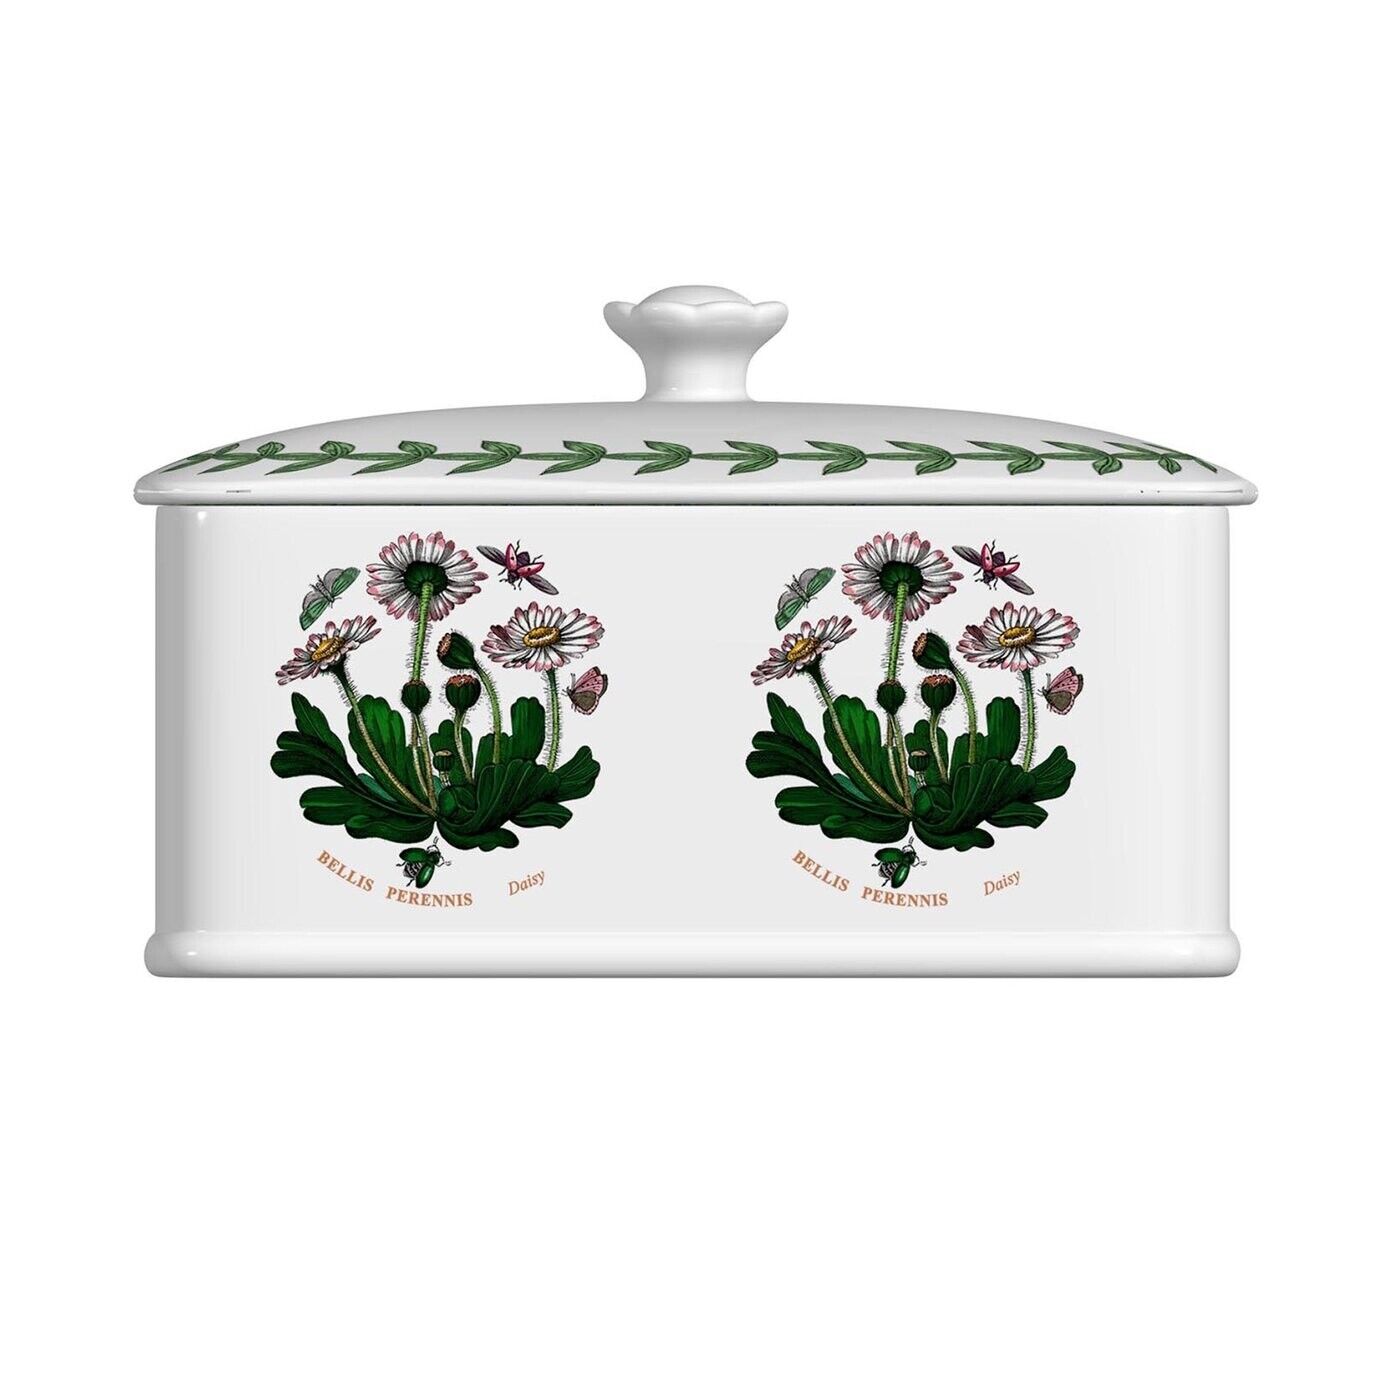 Portmeirion Botanic Garden Porcelain Covered Treasure Trinket Box, 6 x 3.5 Inch